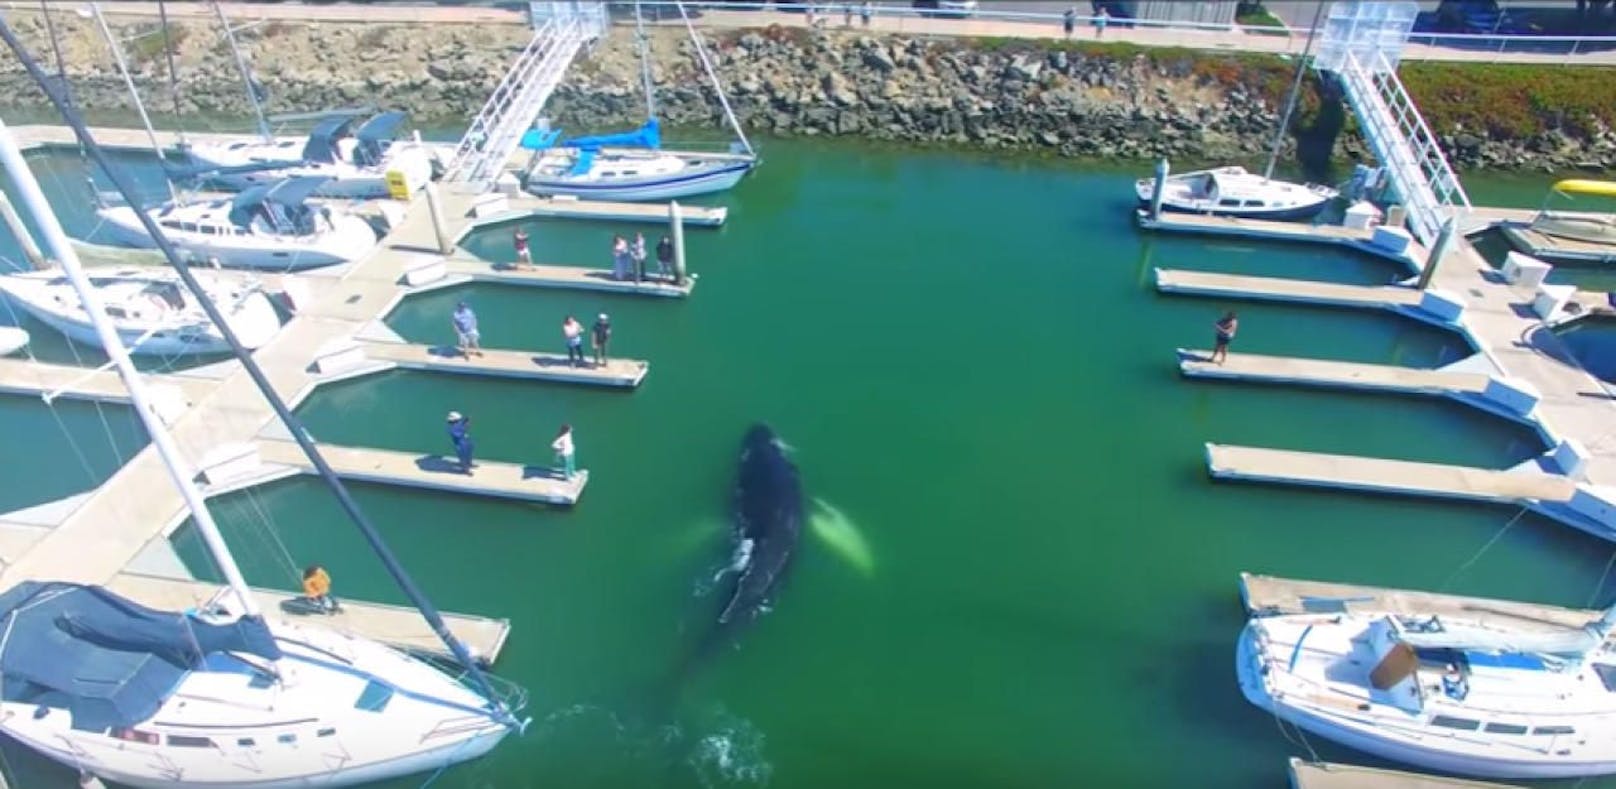 10 Meter Buckelwal verirrt sich in Hafen